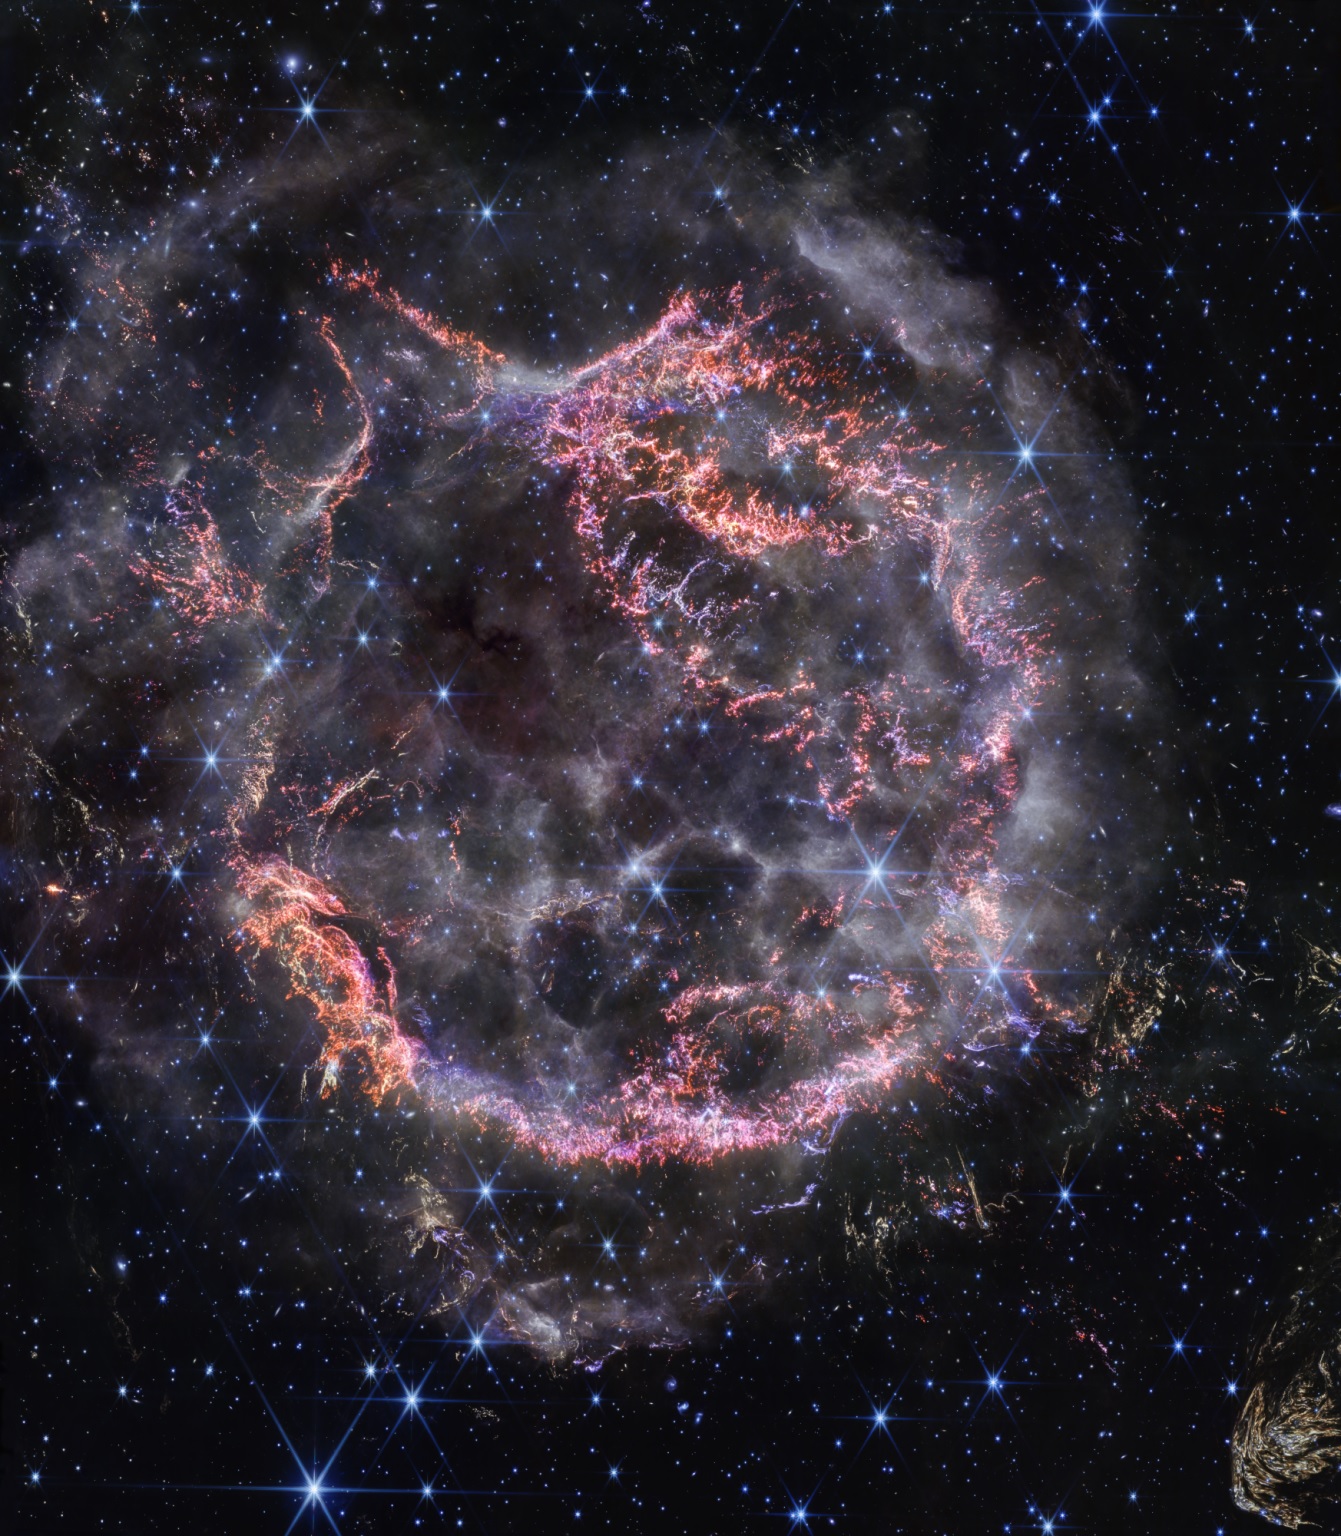 James Webb captura con una resolución sin precedentes una imagen de una explosión estelar ocurrida hace 340 años